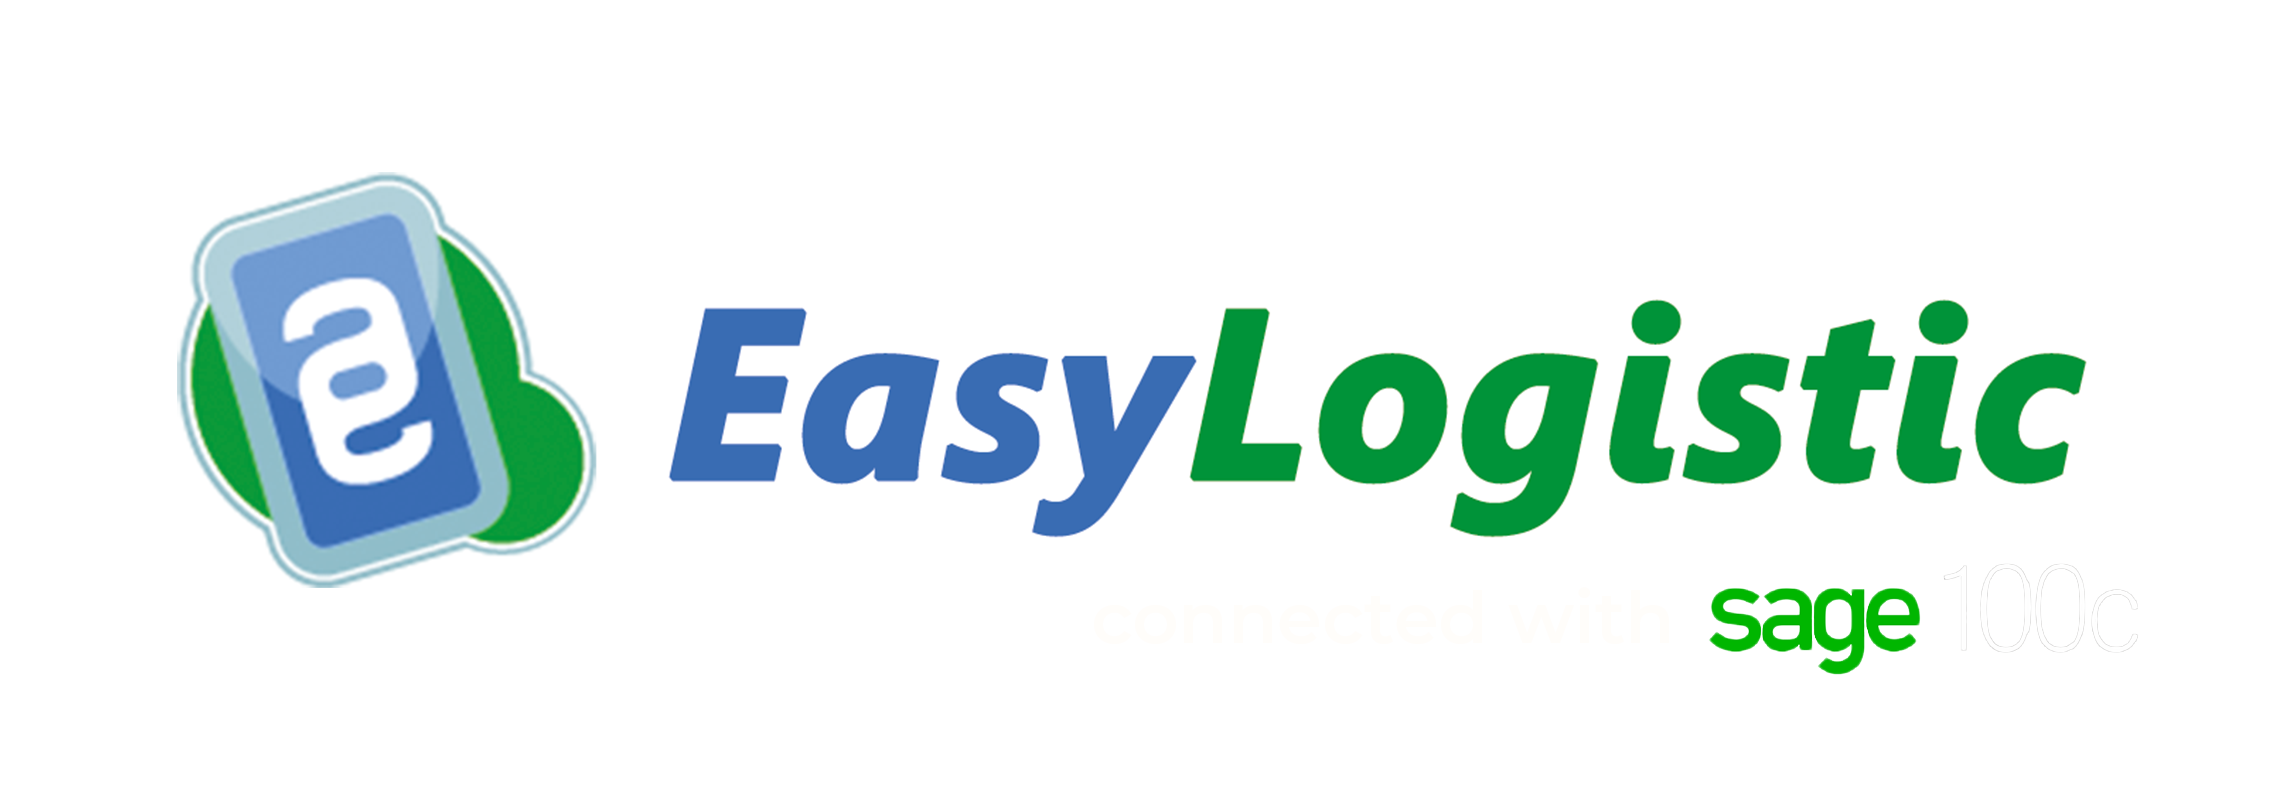 EasyLogistic : logiciel de logistique de gestion de stock compatible et connecté avec l'ERP Sage100C